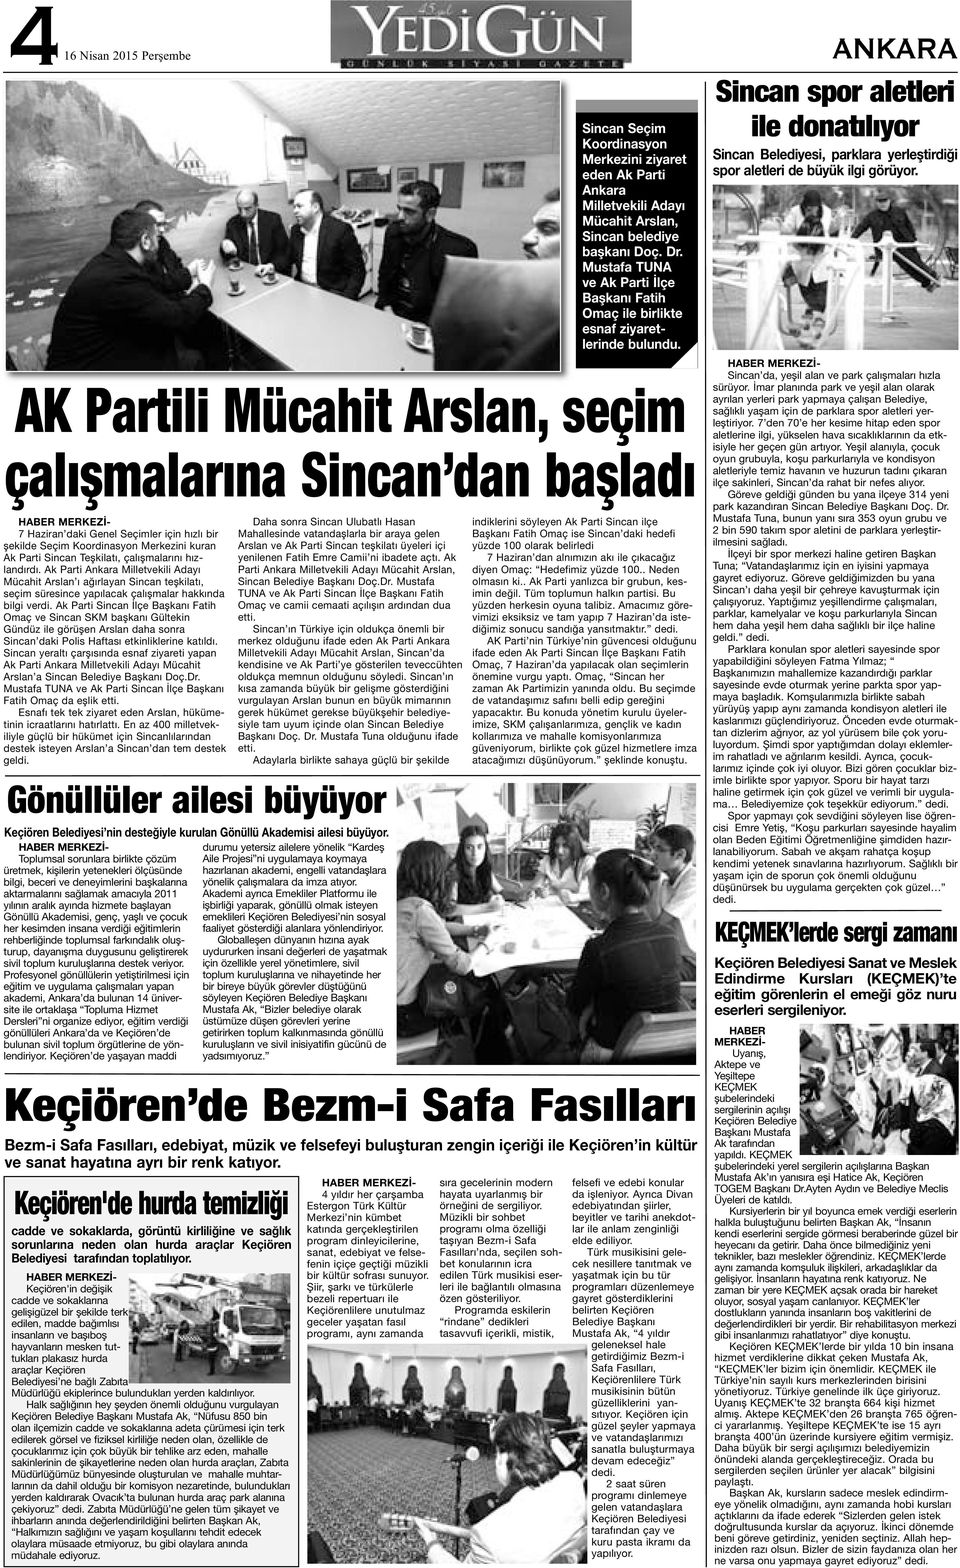 Ak Parti Sincan İlçe Başkanı Fatih Omaç ve Sincan SKM başkanı Gültekin Gündüz ile görüşen Arslan daha sonra Sincan daki Polis Haftası etkinliklerine katıldı.